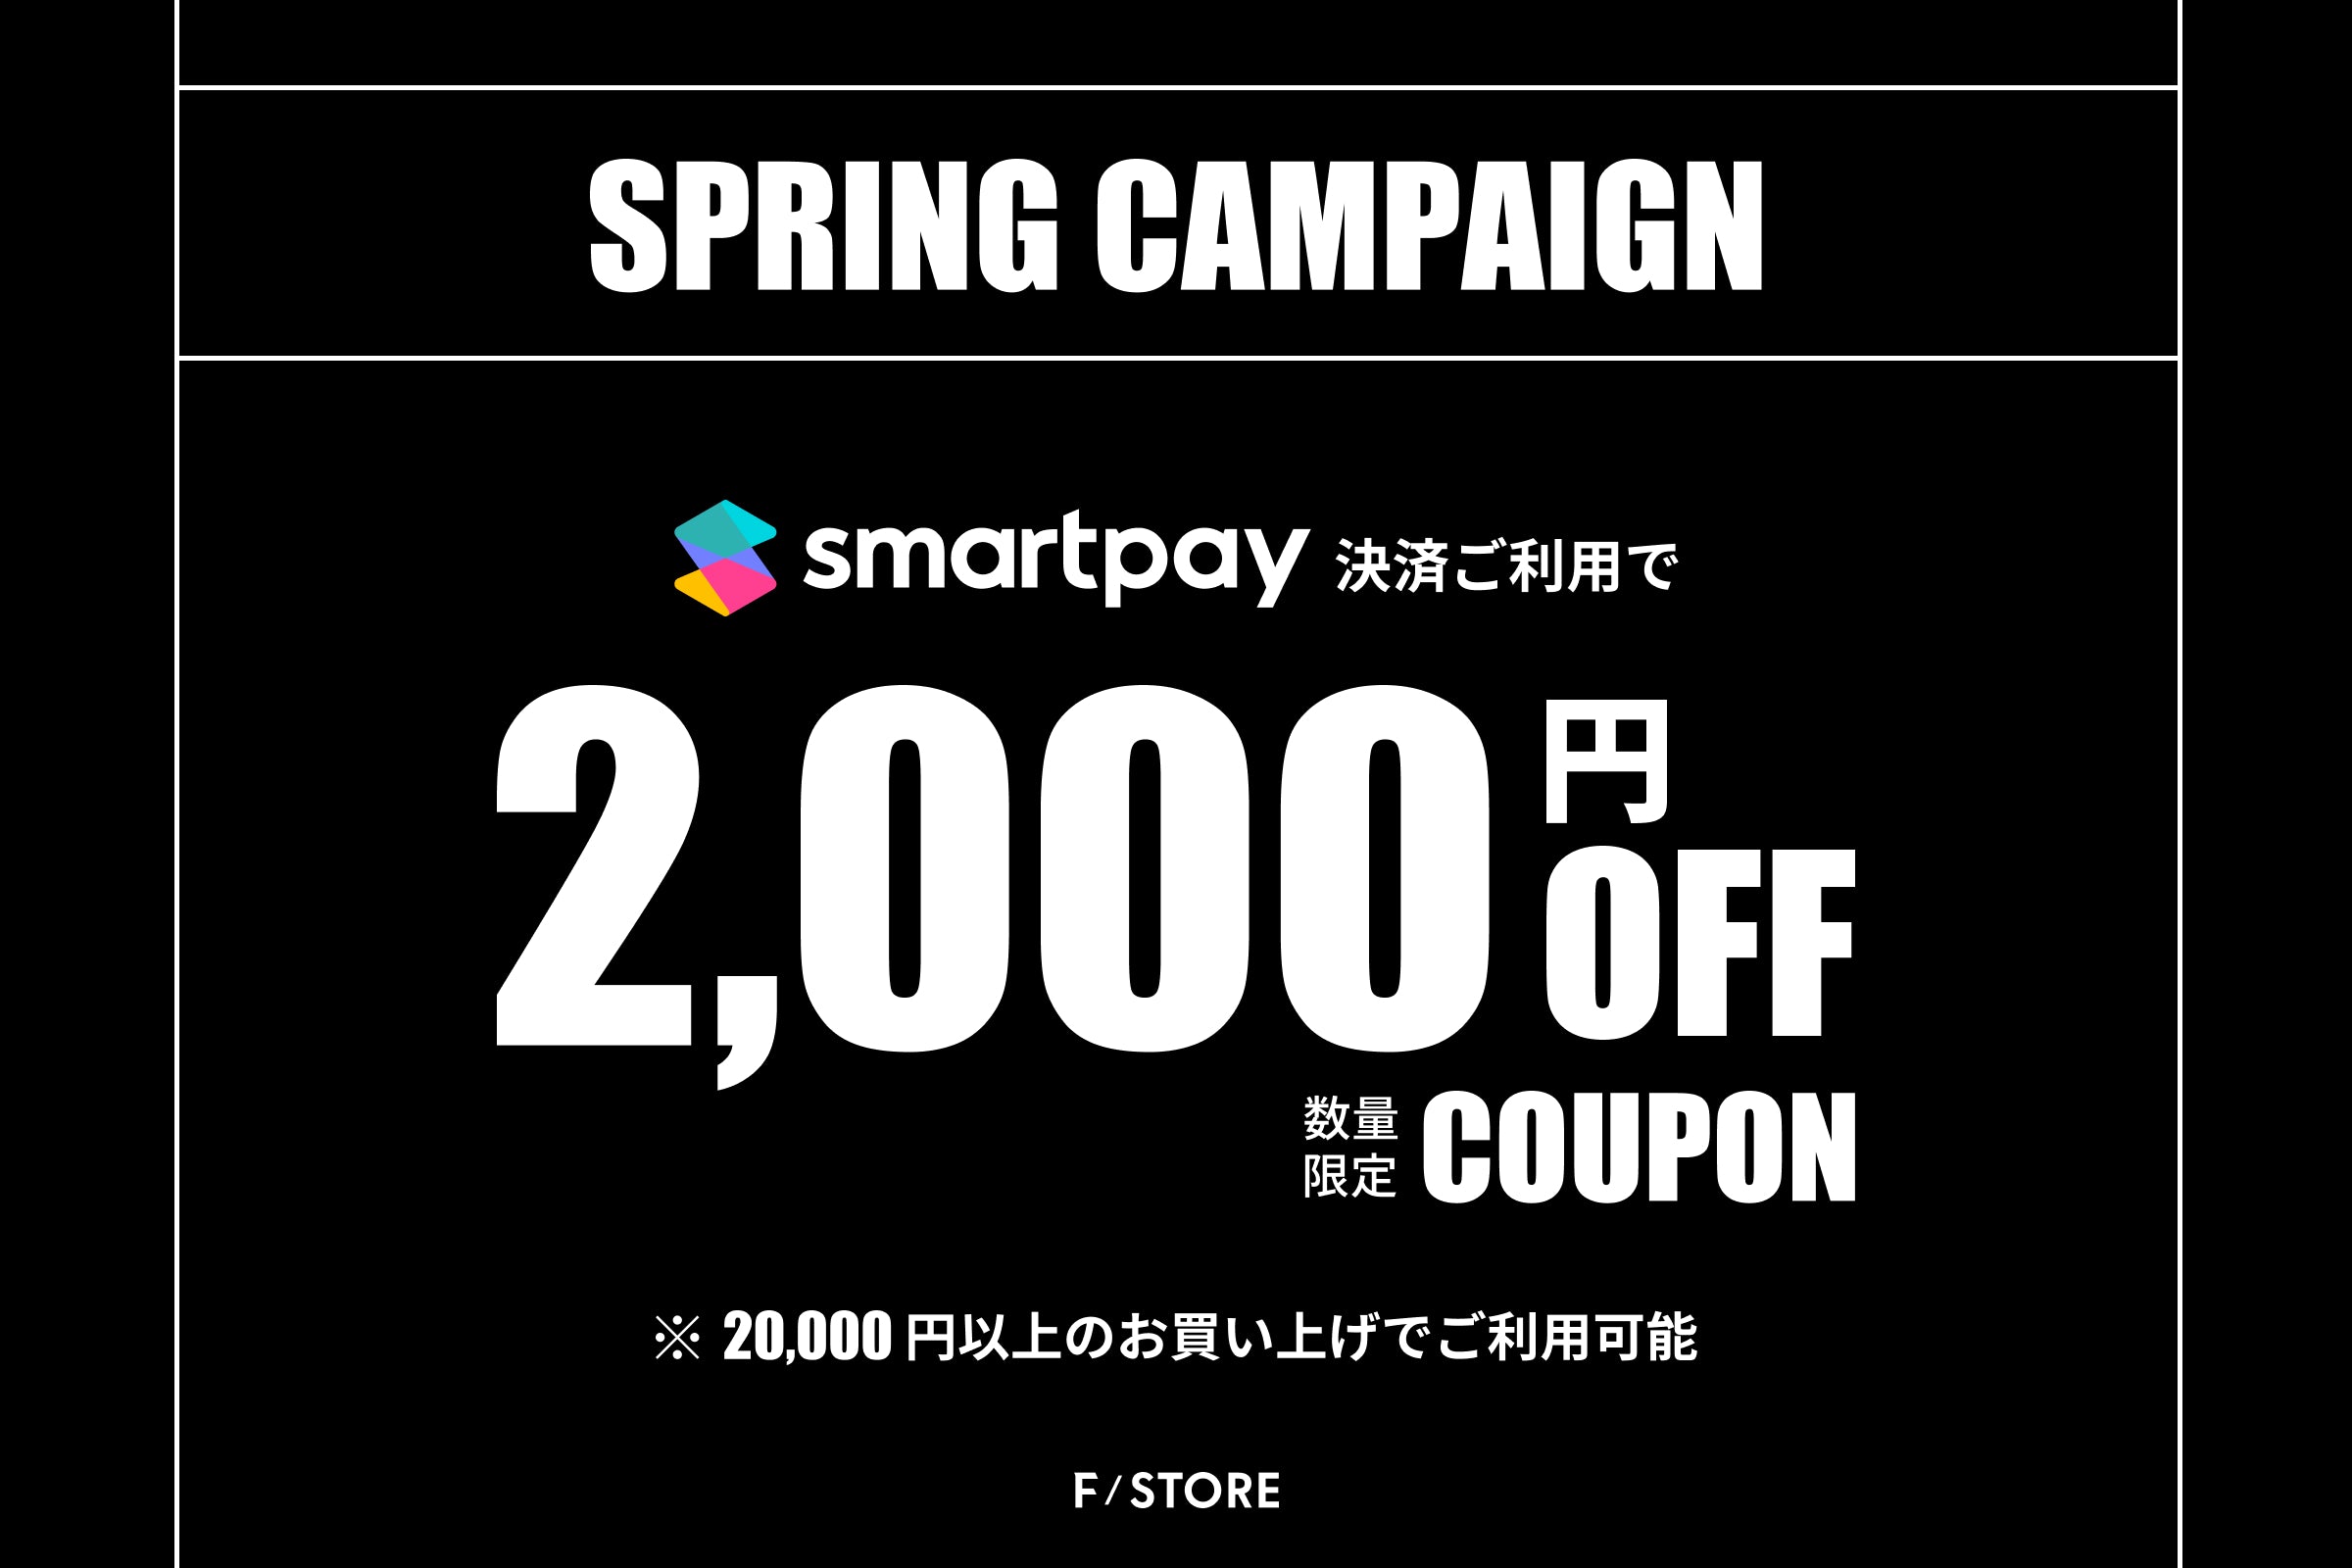 【お知らせ】3回無料分割払いサービス「smartpay」で使える、2000OFFクーポンプレゼントキャンペーン実施中！